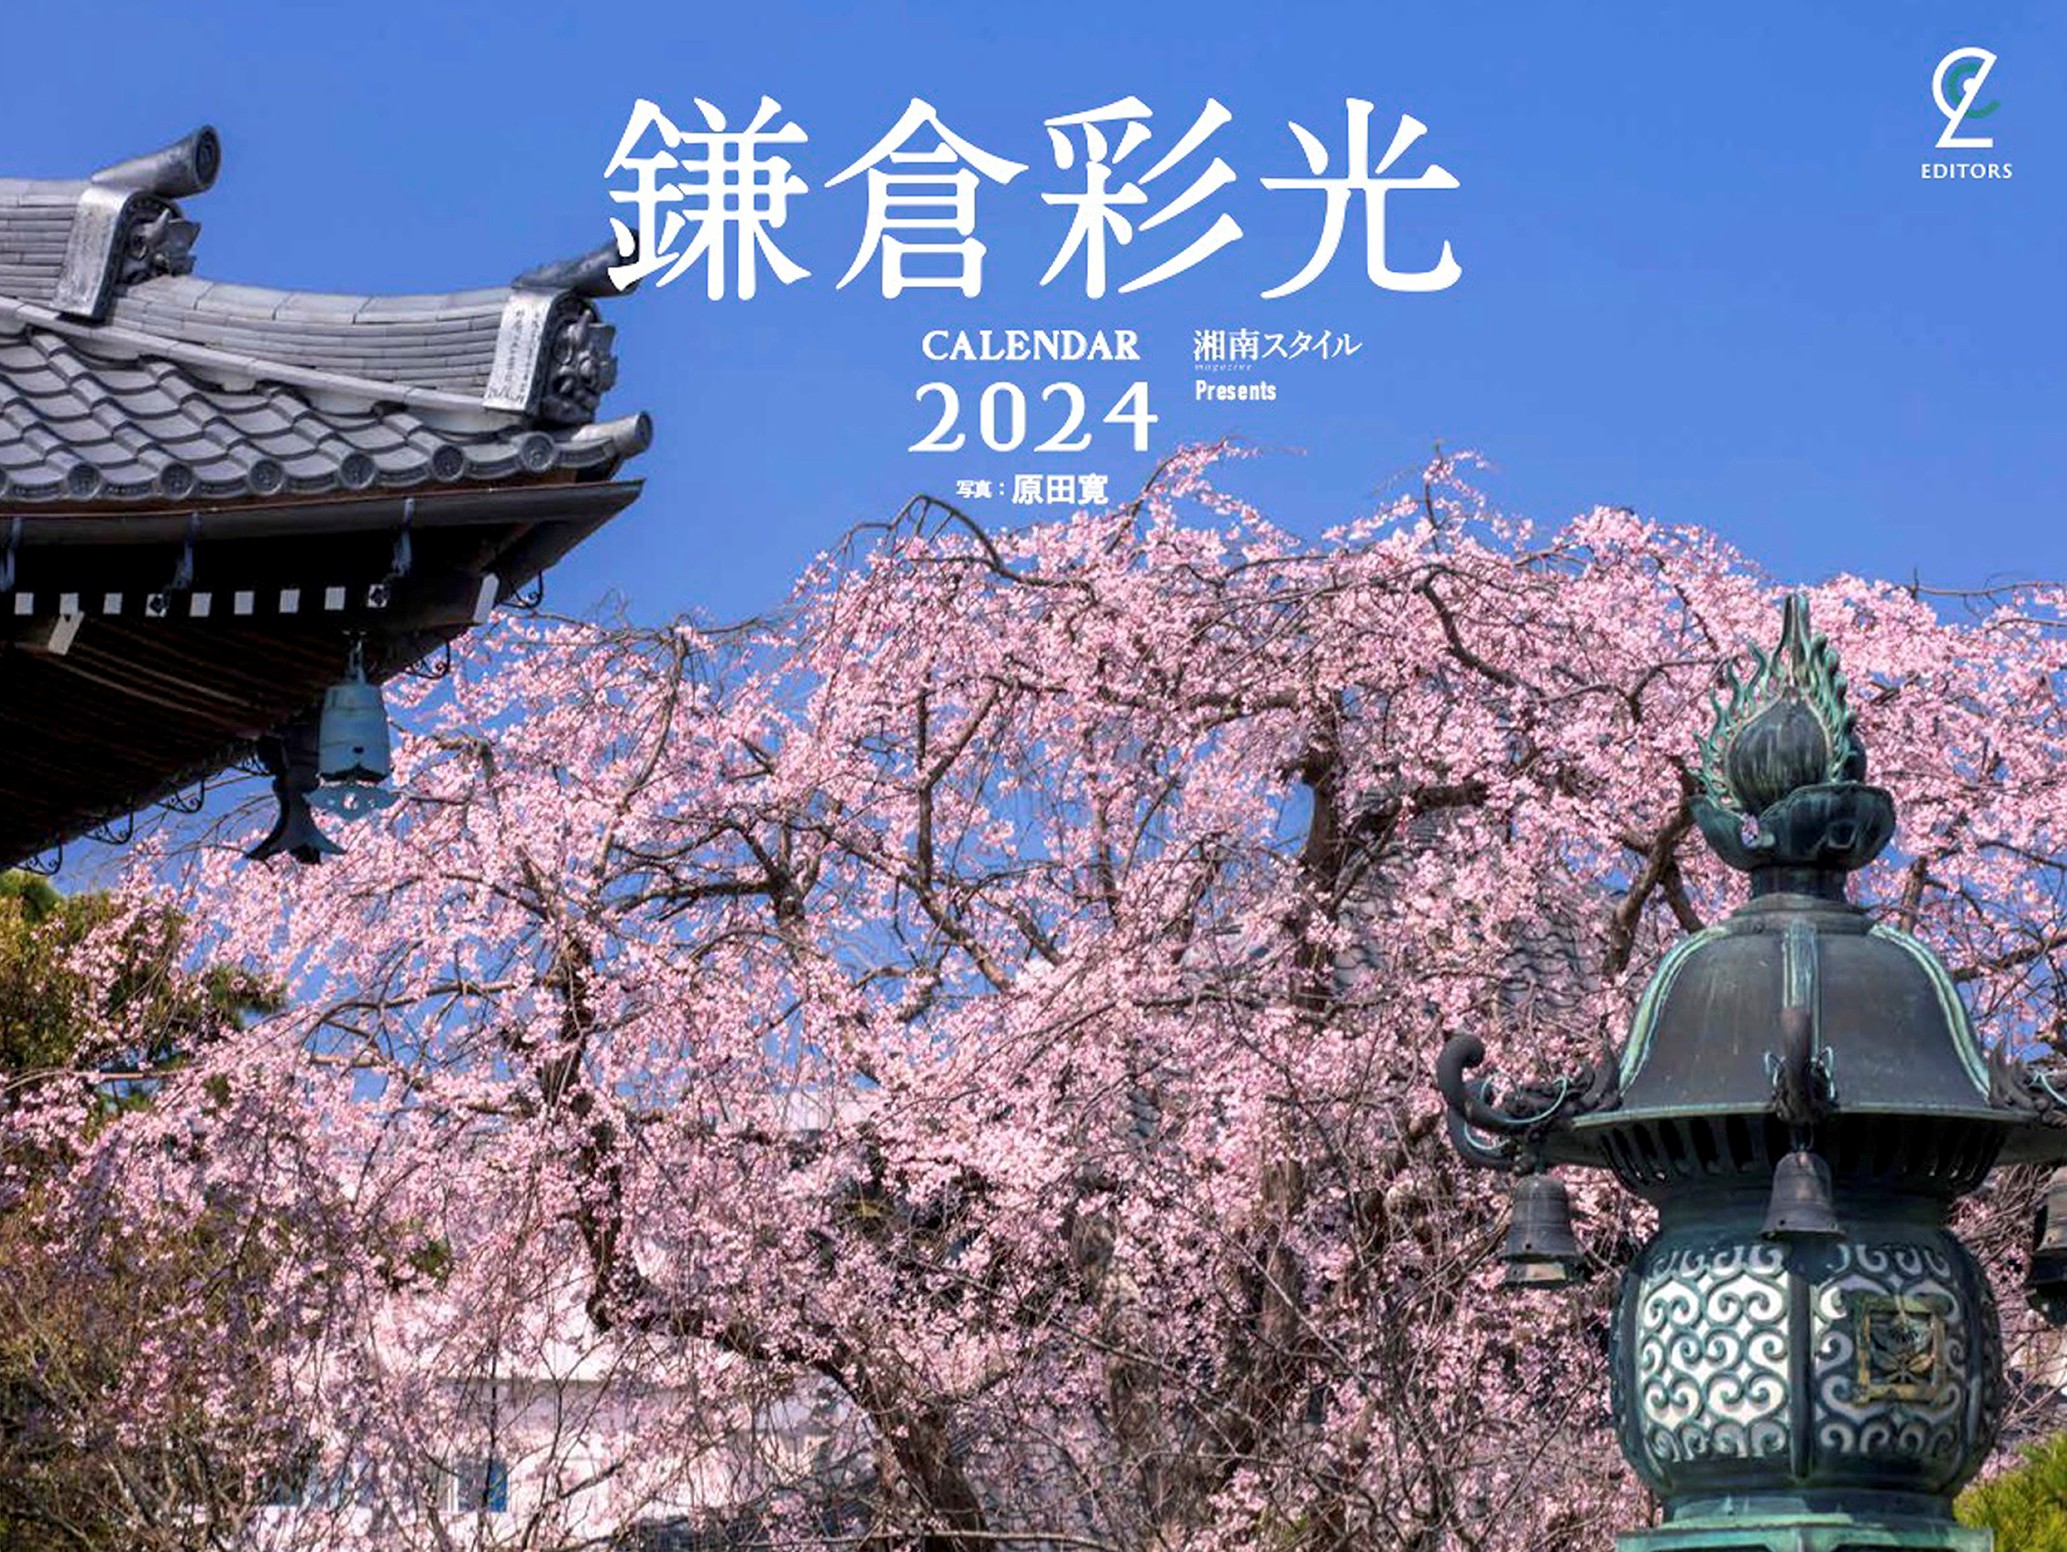 2024カレンダー鎌倉彩光表紙